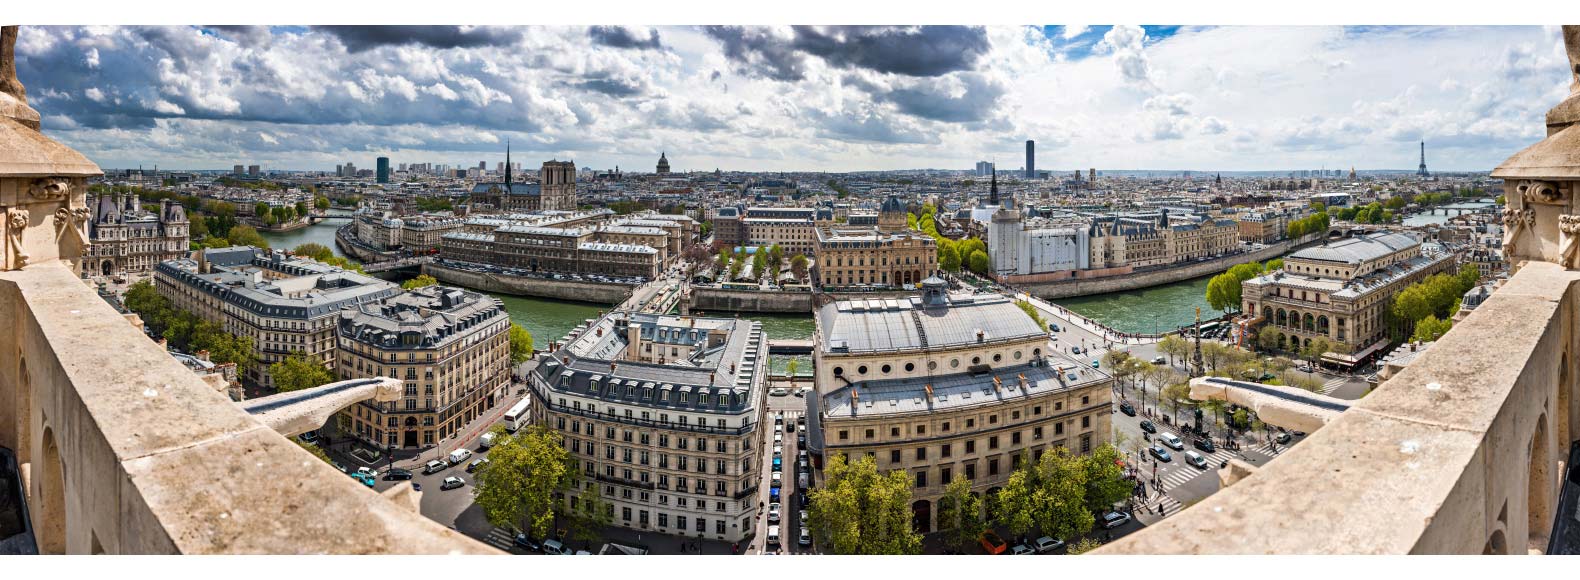 Panorama 180° sur Paris sud depuis la tour Saint-Jacques, photo panoramique 180° de Paris.